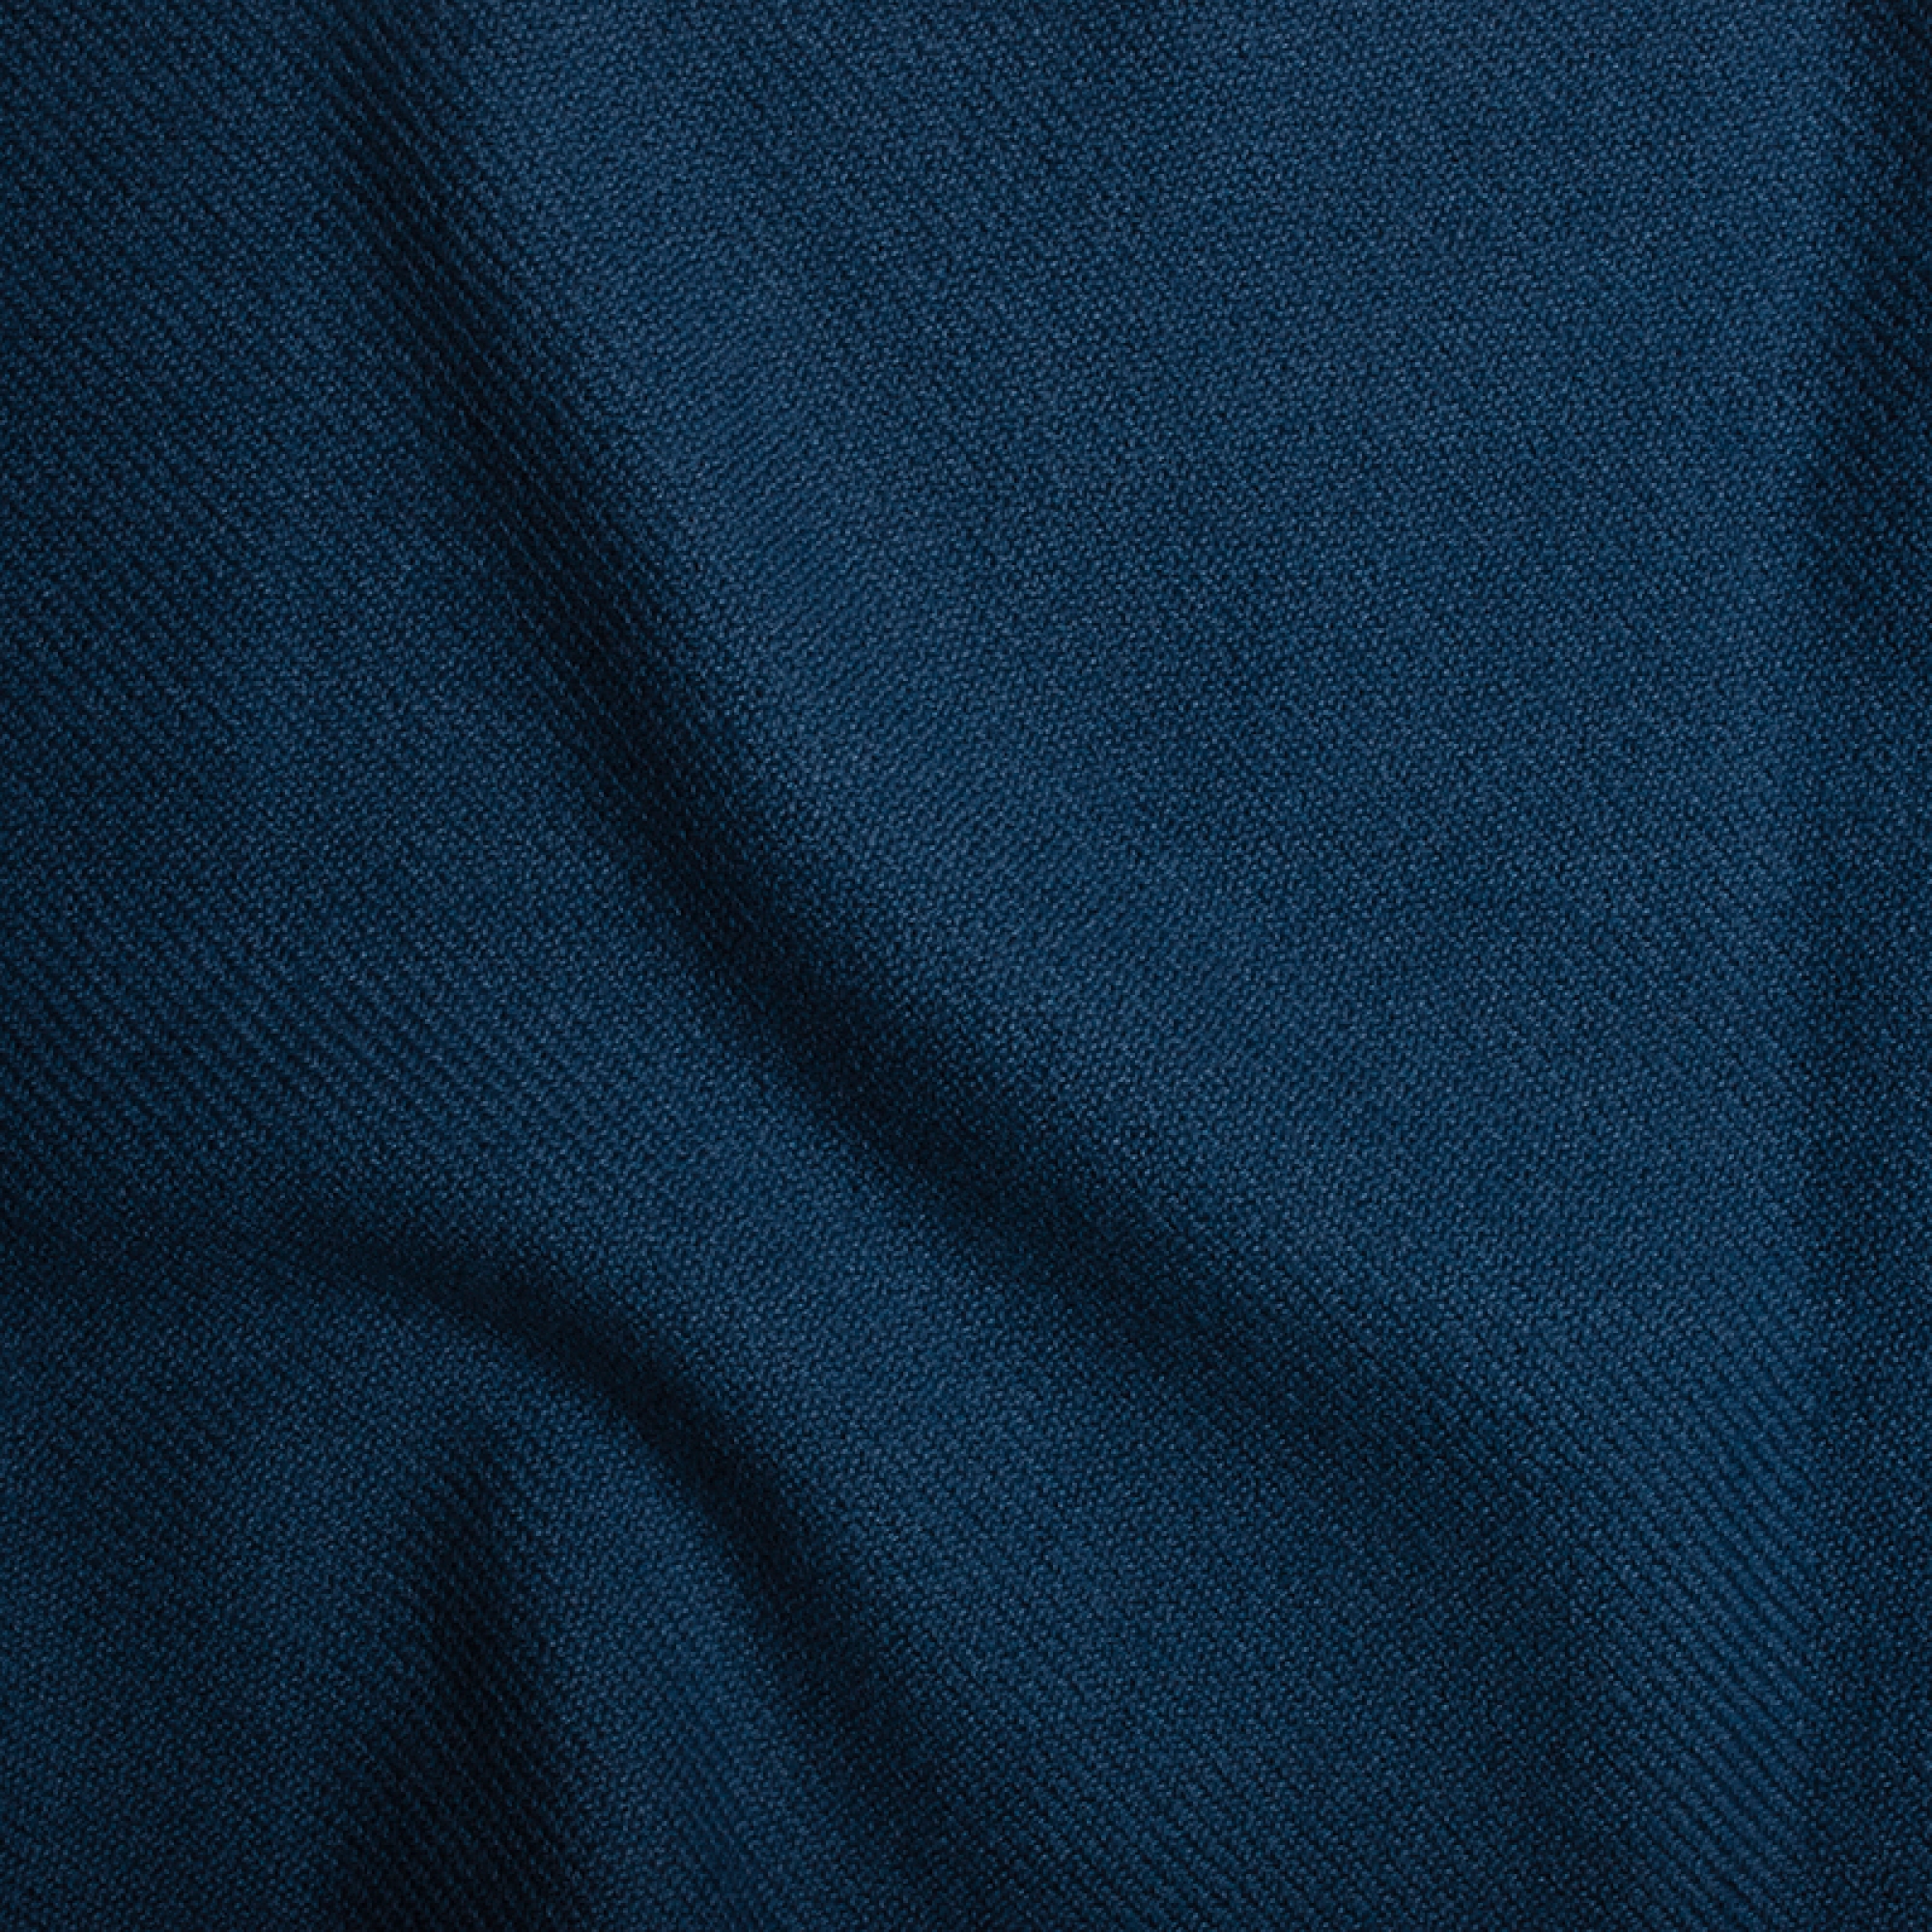 Cashmere men homewear toodoo plain l 220 x 220 dark blue 220x220cm